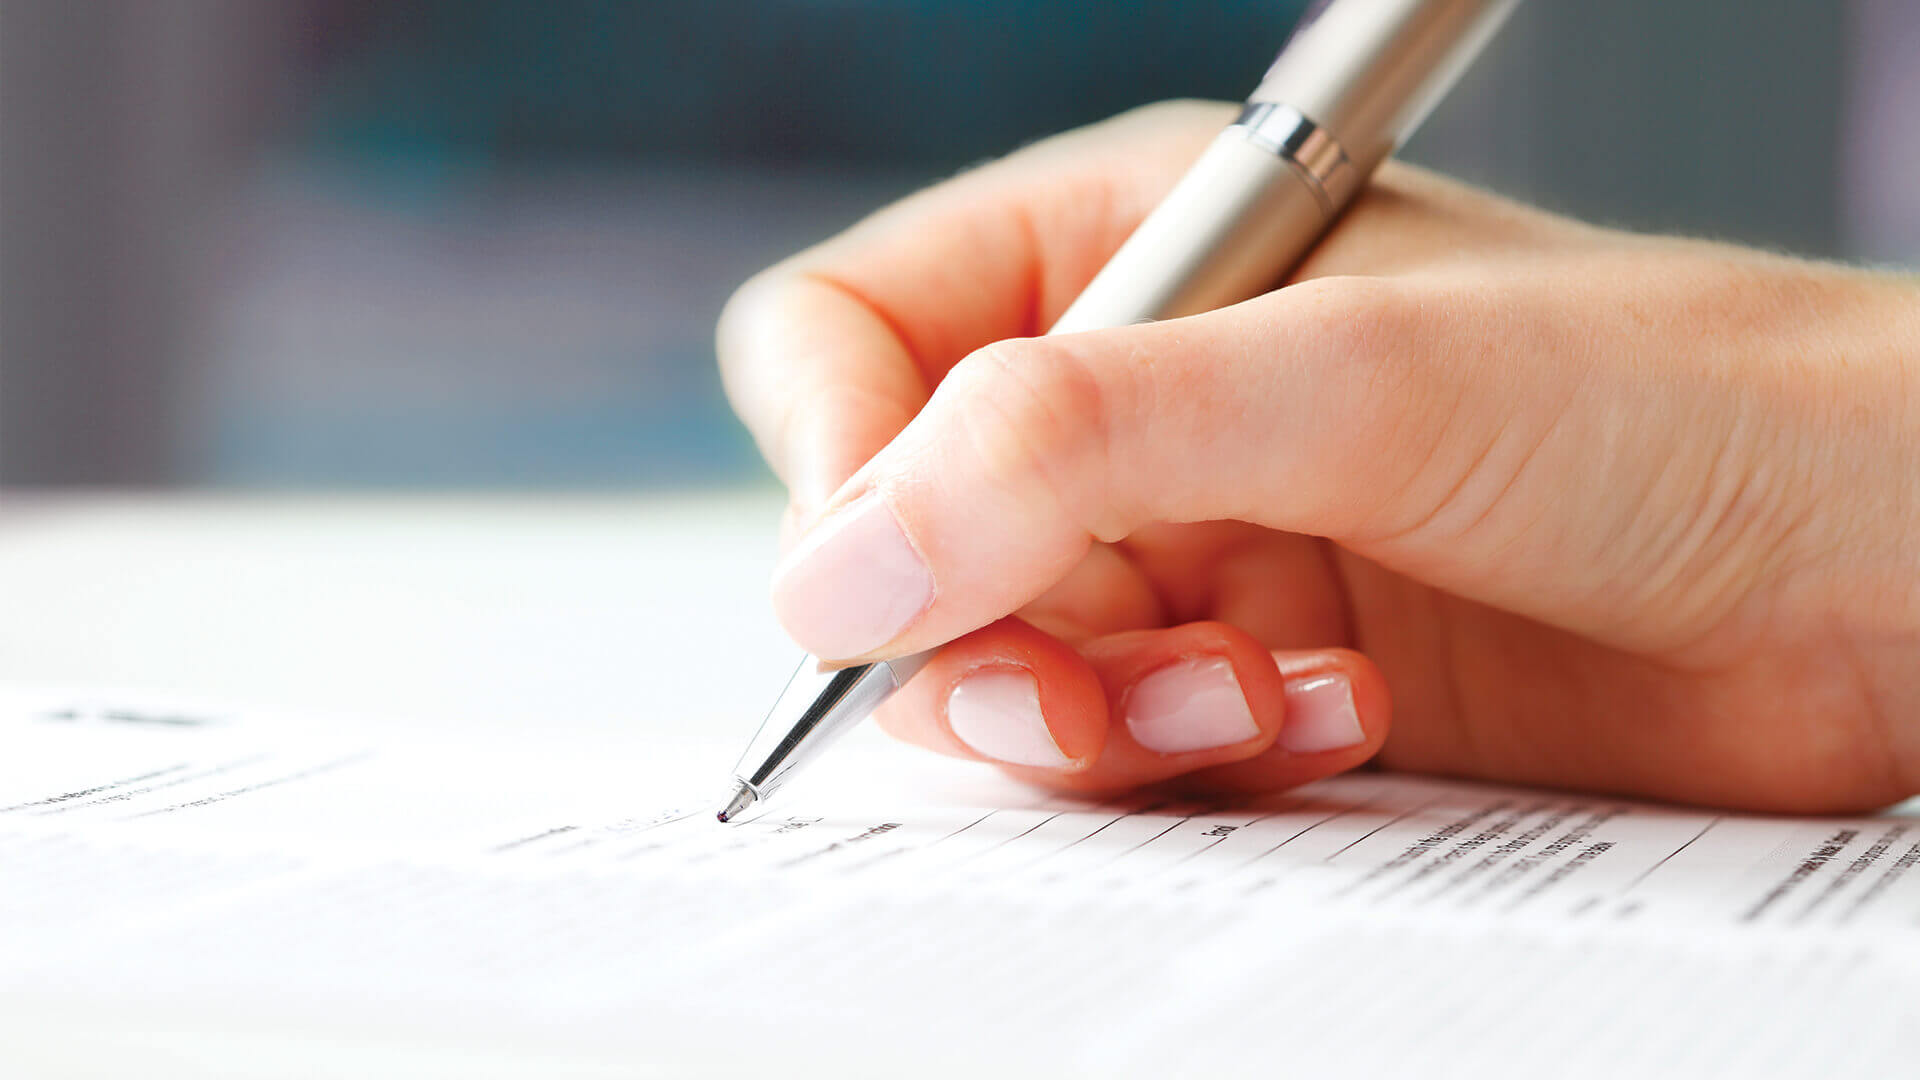 Gros plan sur la main d'une personne tenant un stylo et signant un document, soulignant le souci du détail.